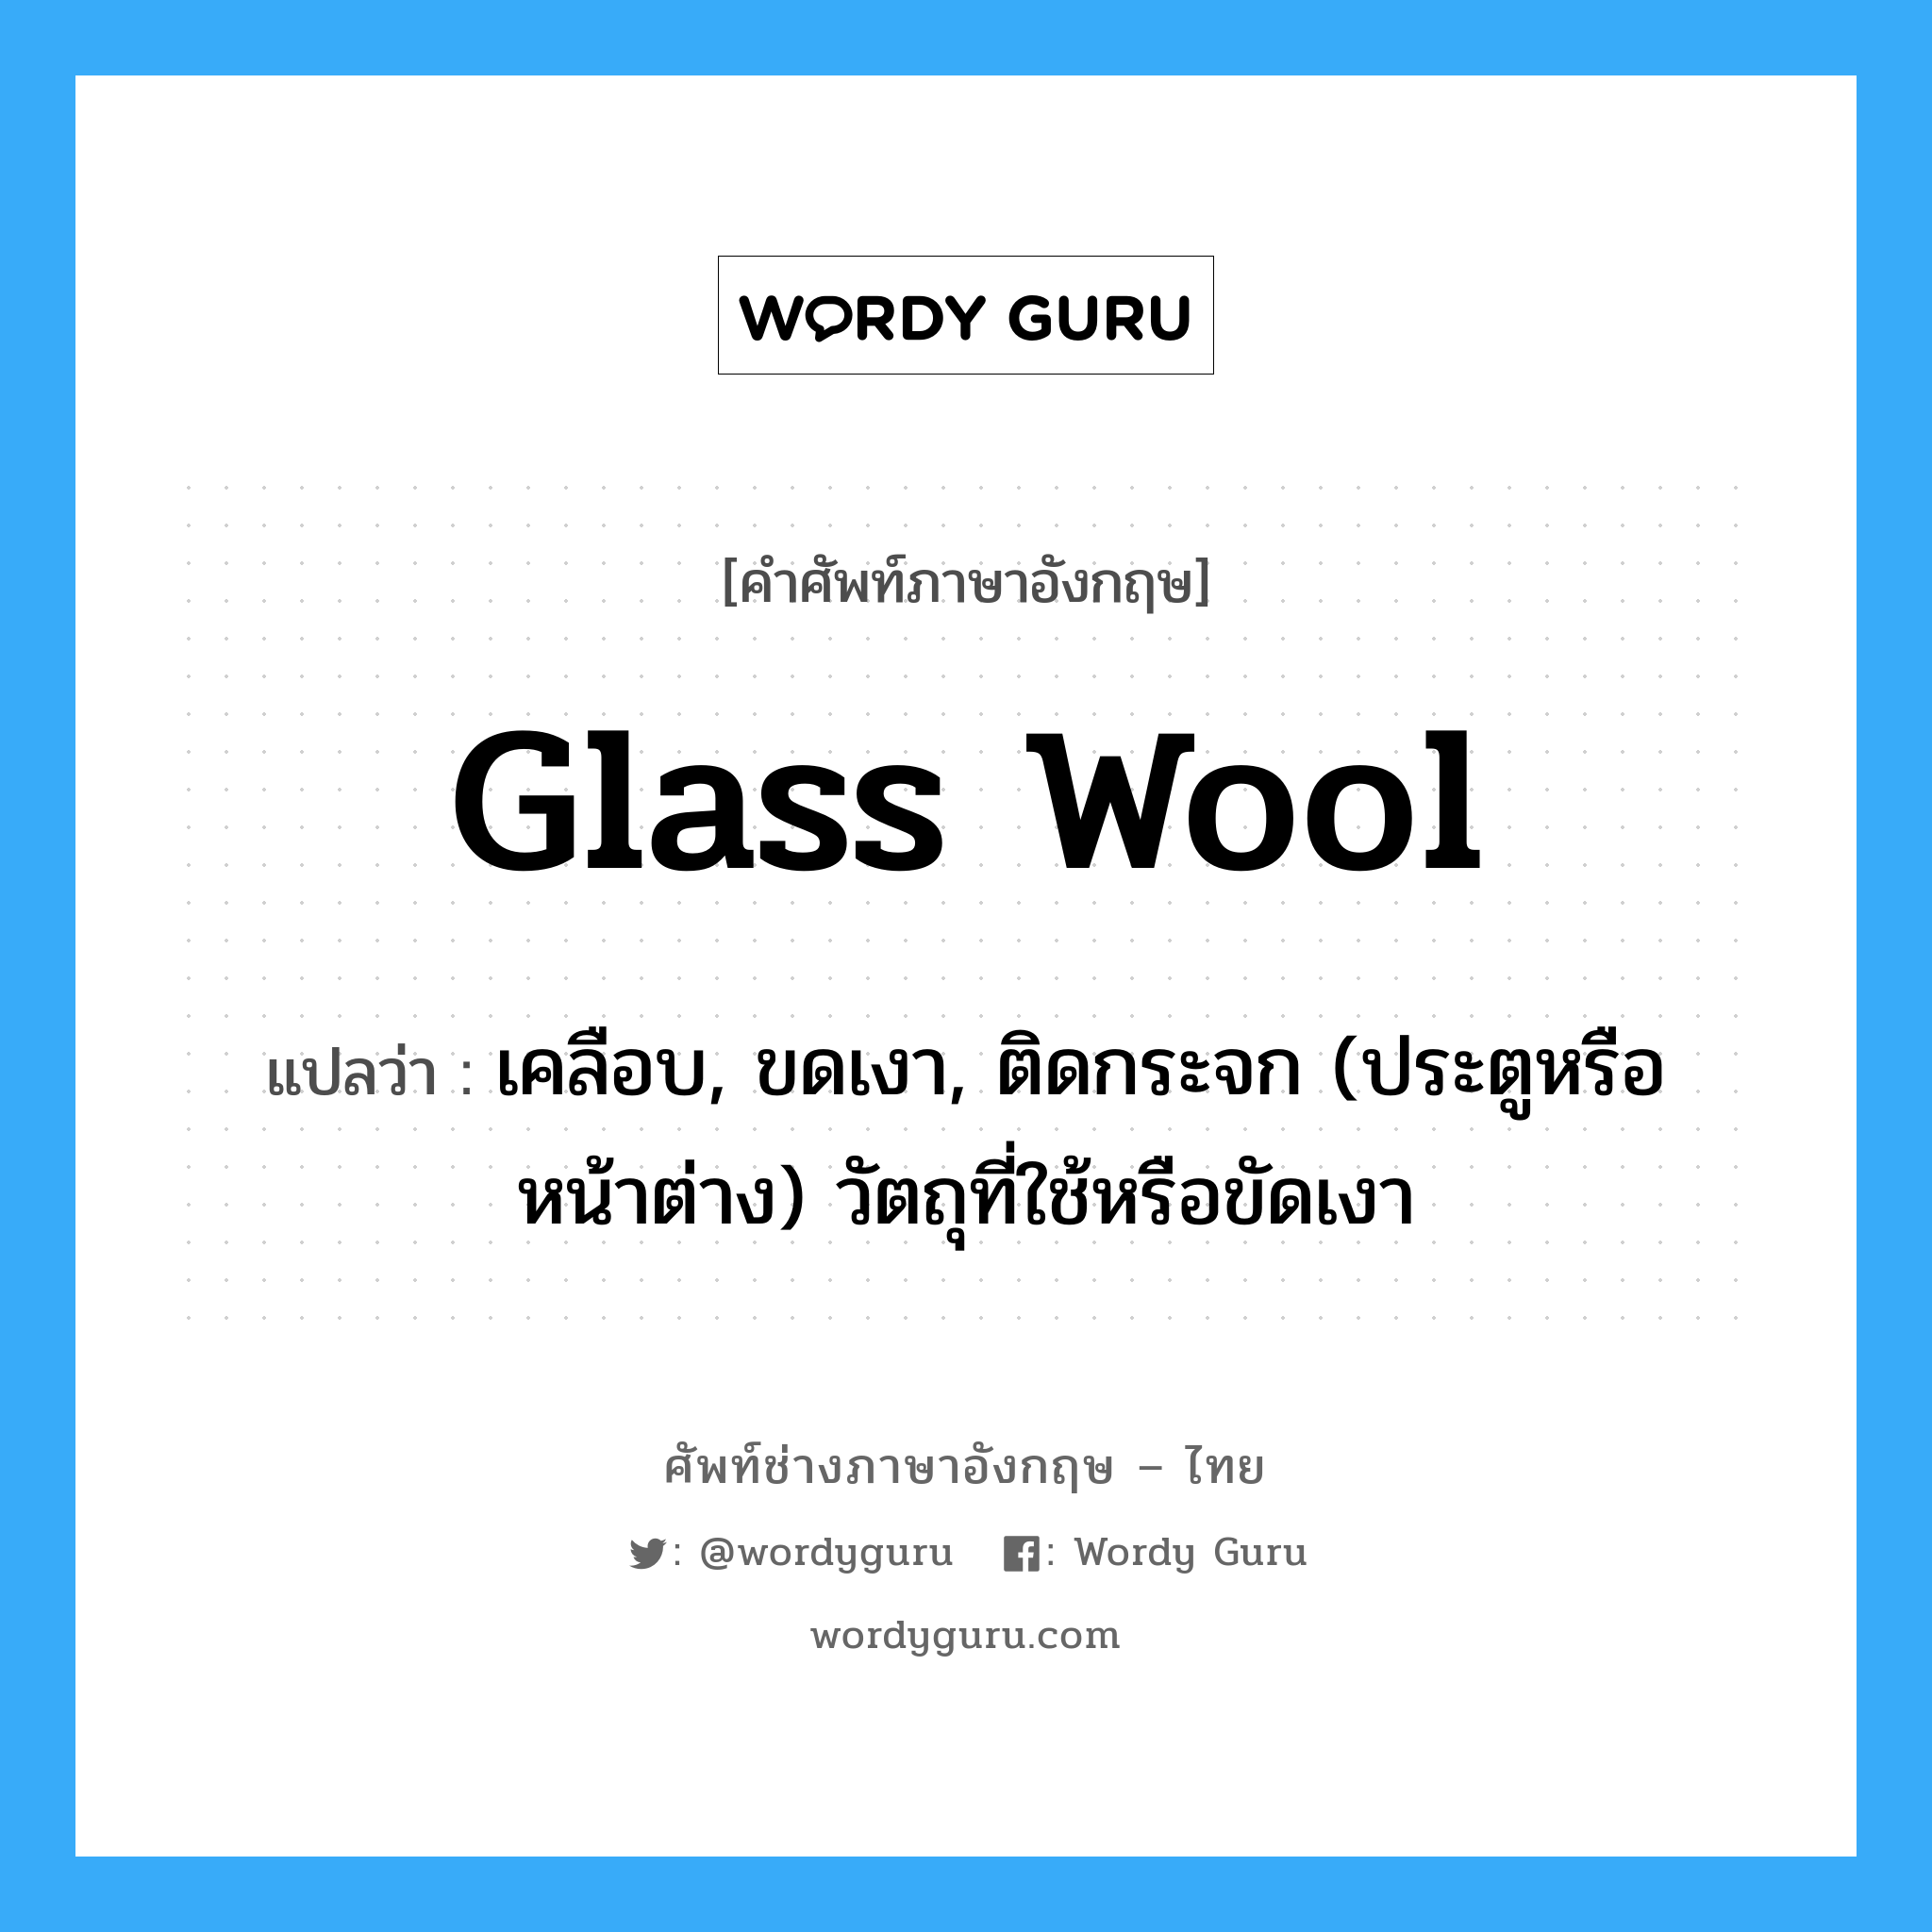 glass wool แปลว่า?, คำศัพท์ช่างภาษาอังกฤษ - ไทย glass wool คำศัพท์ภาษาอังกฤษ glass wool แปลว่า เคลือบ, ขดเงา, ติดกระจก (ประตูหรือหน้าต่าง) วัตถุที่ใช้หรือขัดเงา